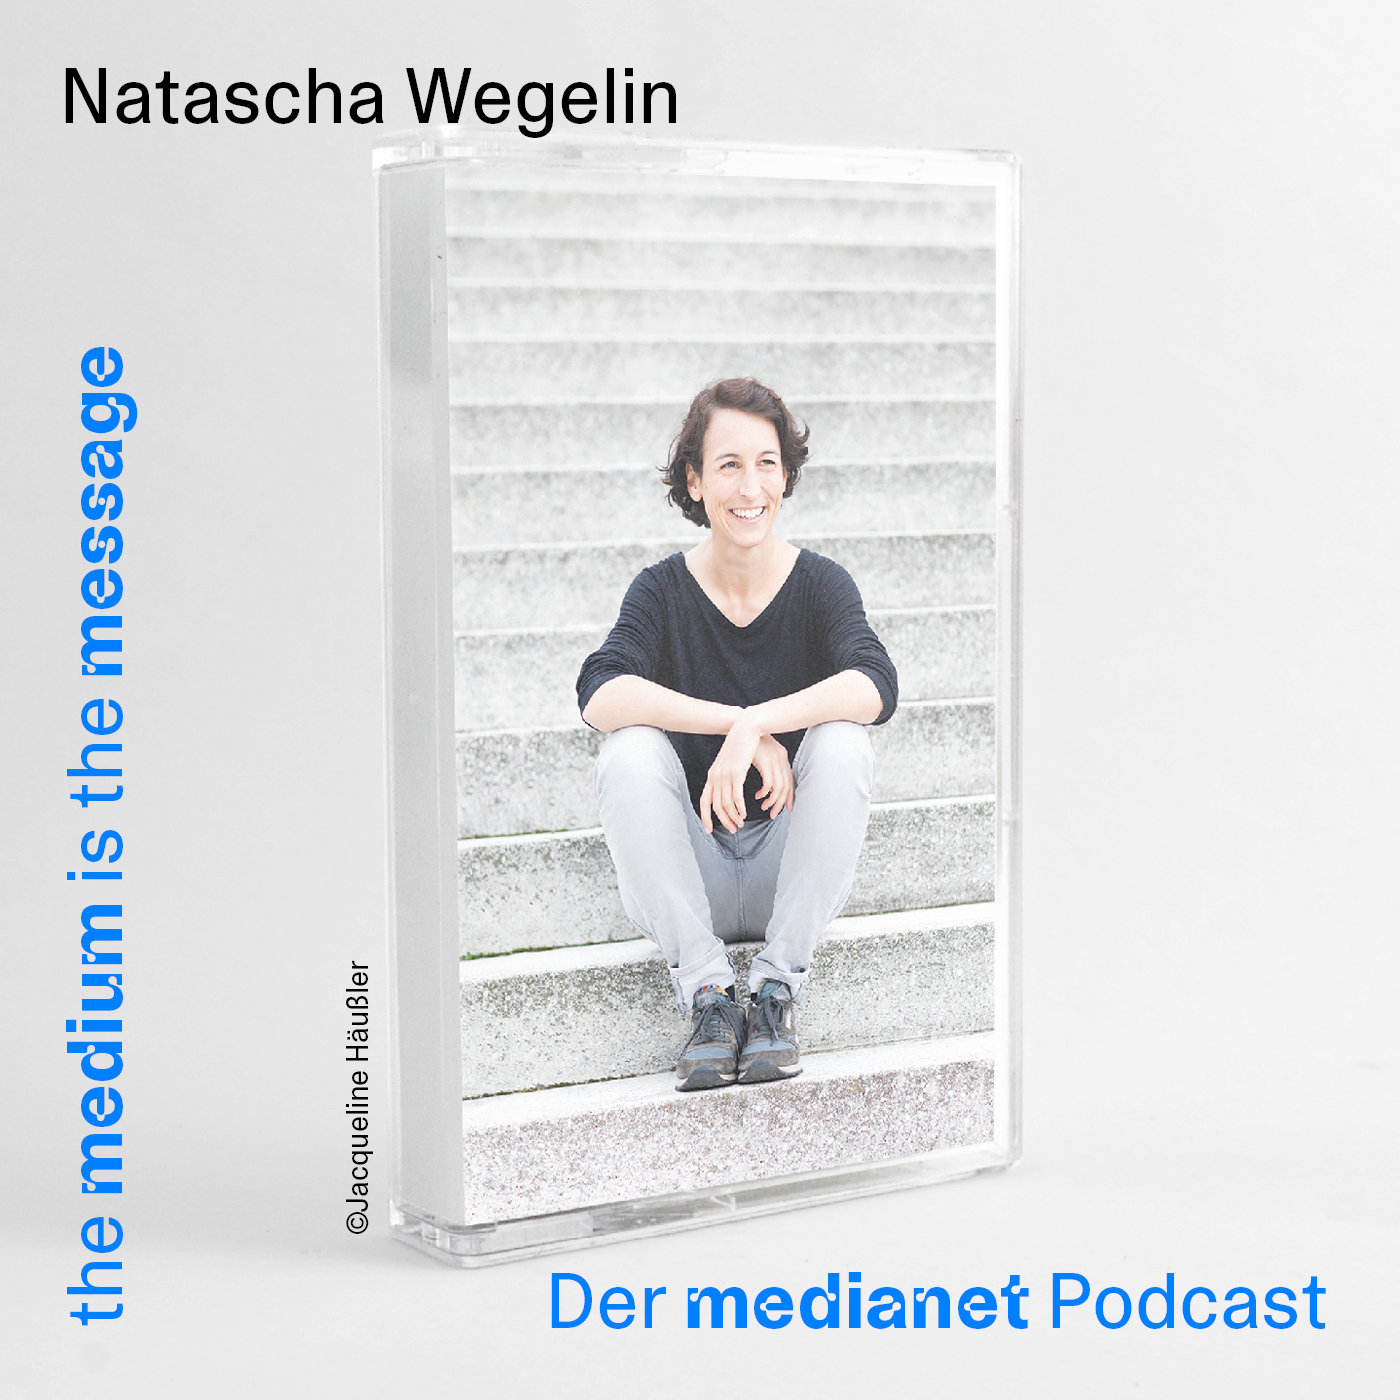 Natascha Wegelin - Wie hilfst du Frauen in die finanzielle Unabhängigkeit?